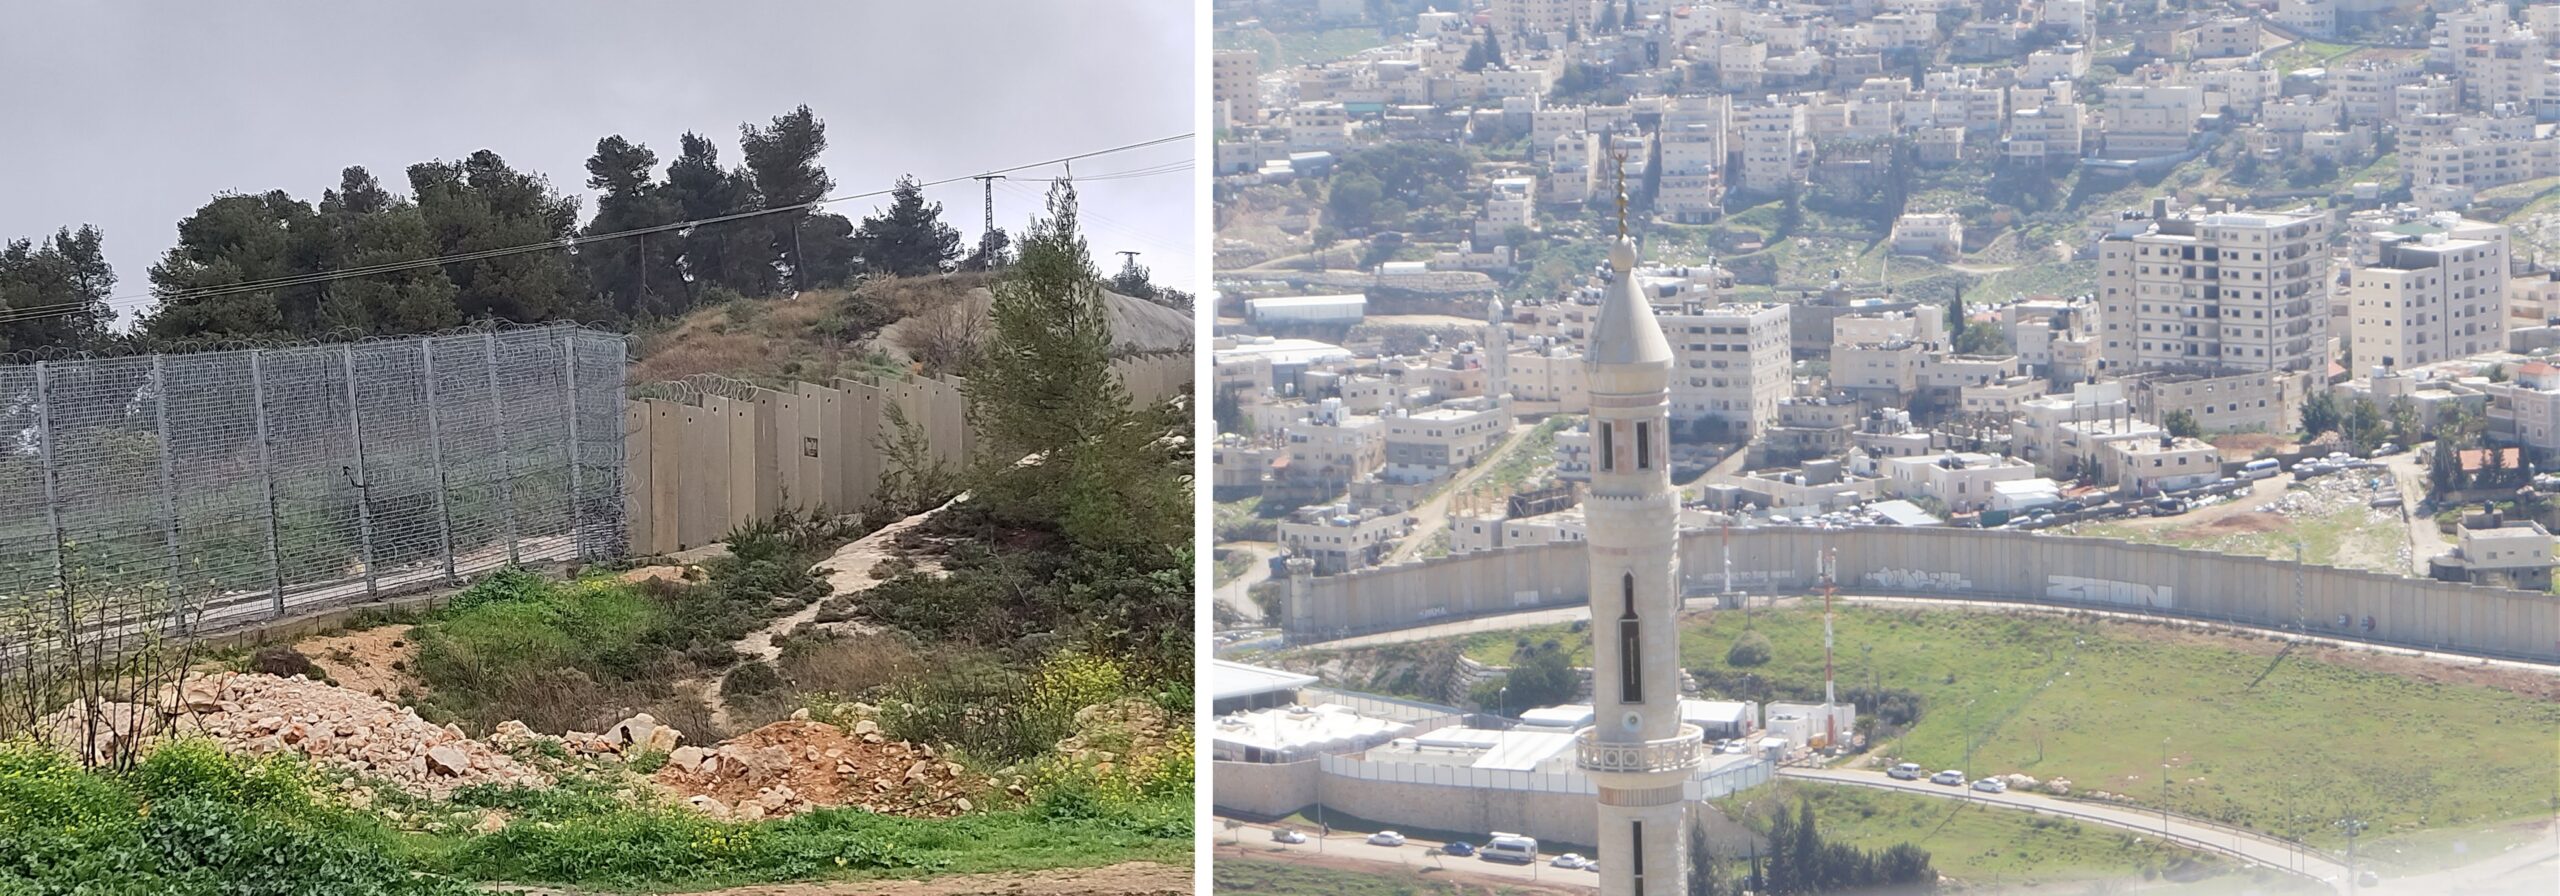 Dal filo spinato al muro di separazione a Al-Walajah - Il muro di separazione a Gerusalemme - Foto: © Béatrice Battaglia